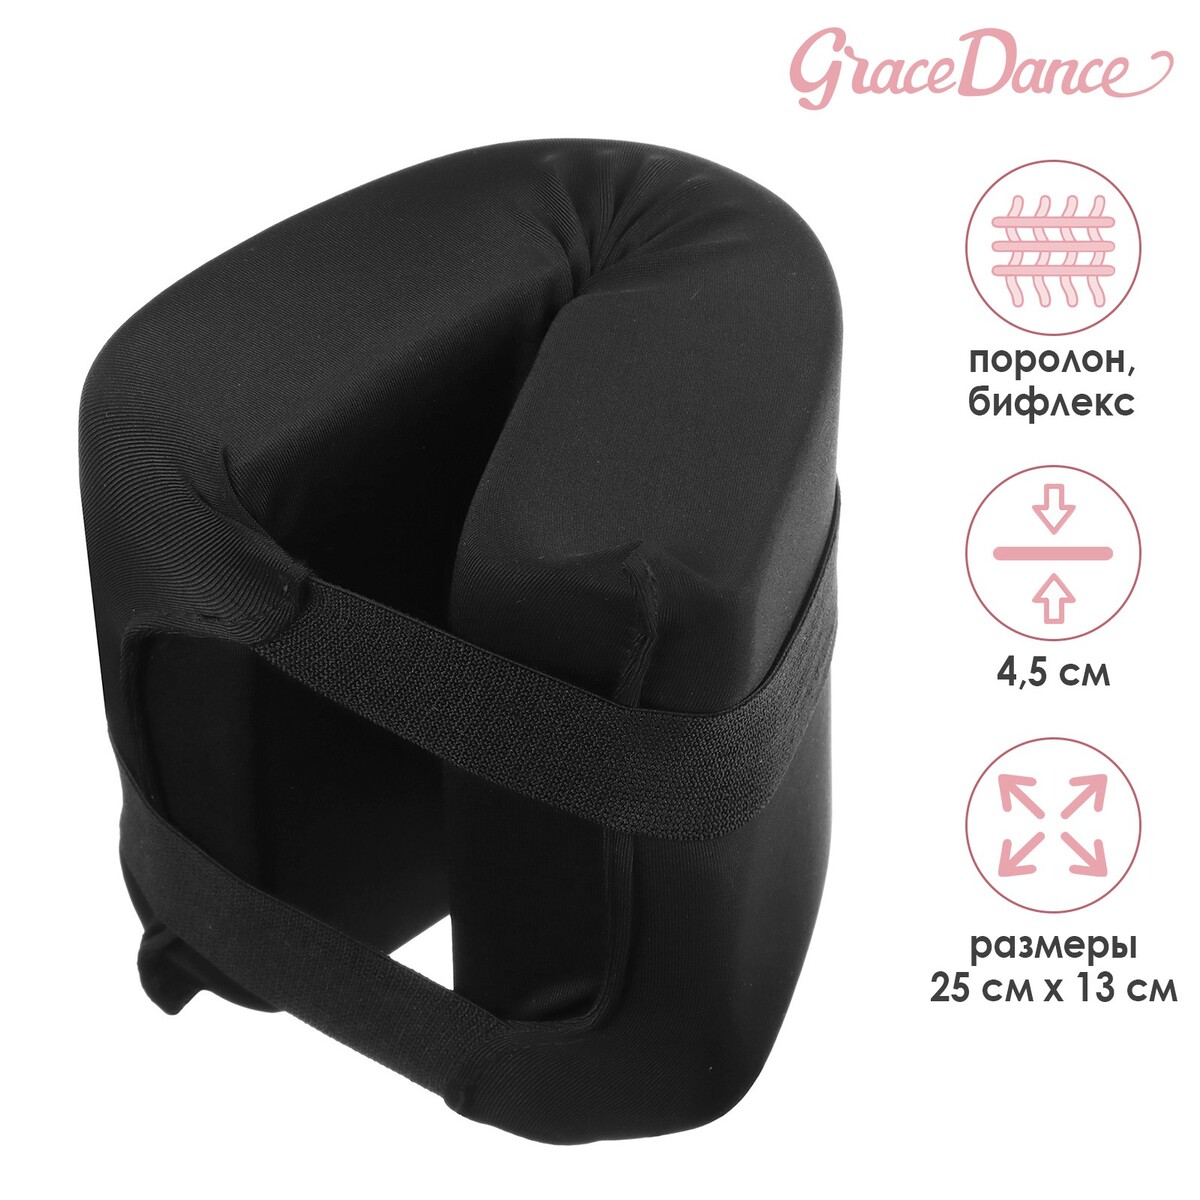 Подушка для растяжки grace dance, цвет черный движение форма танец анг movement form dance